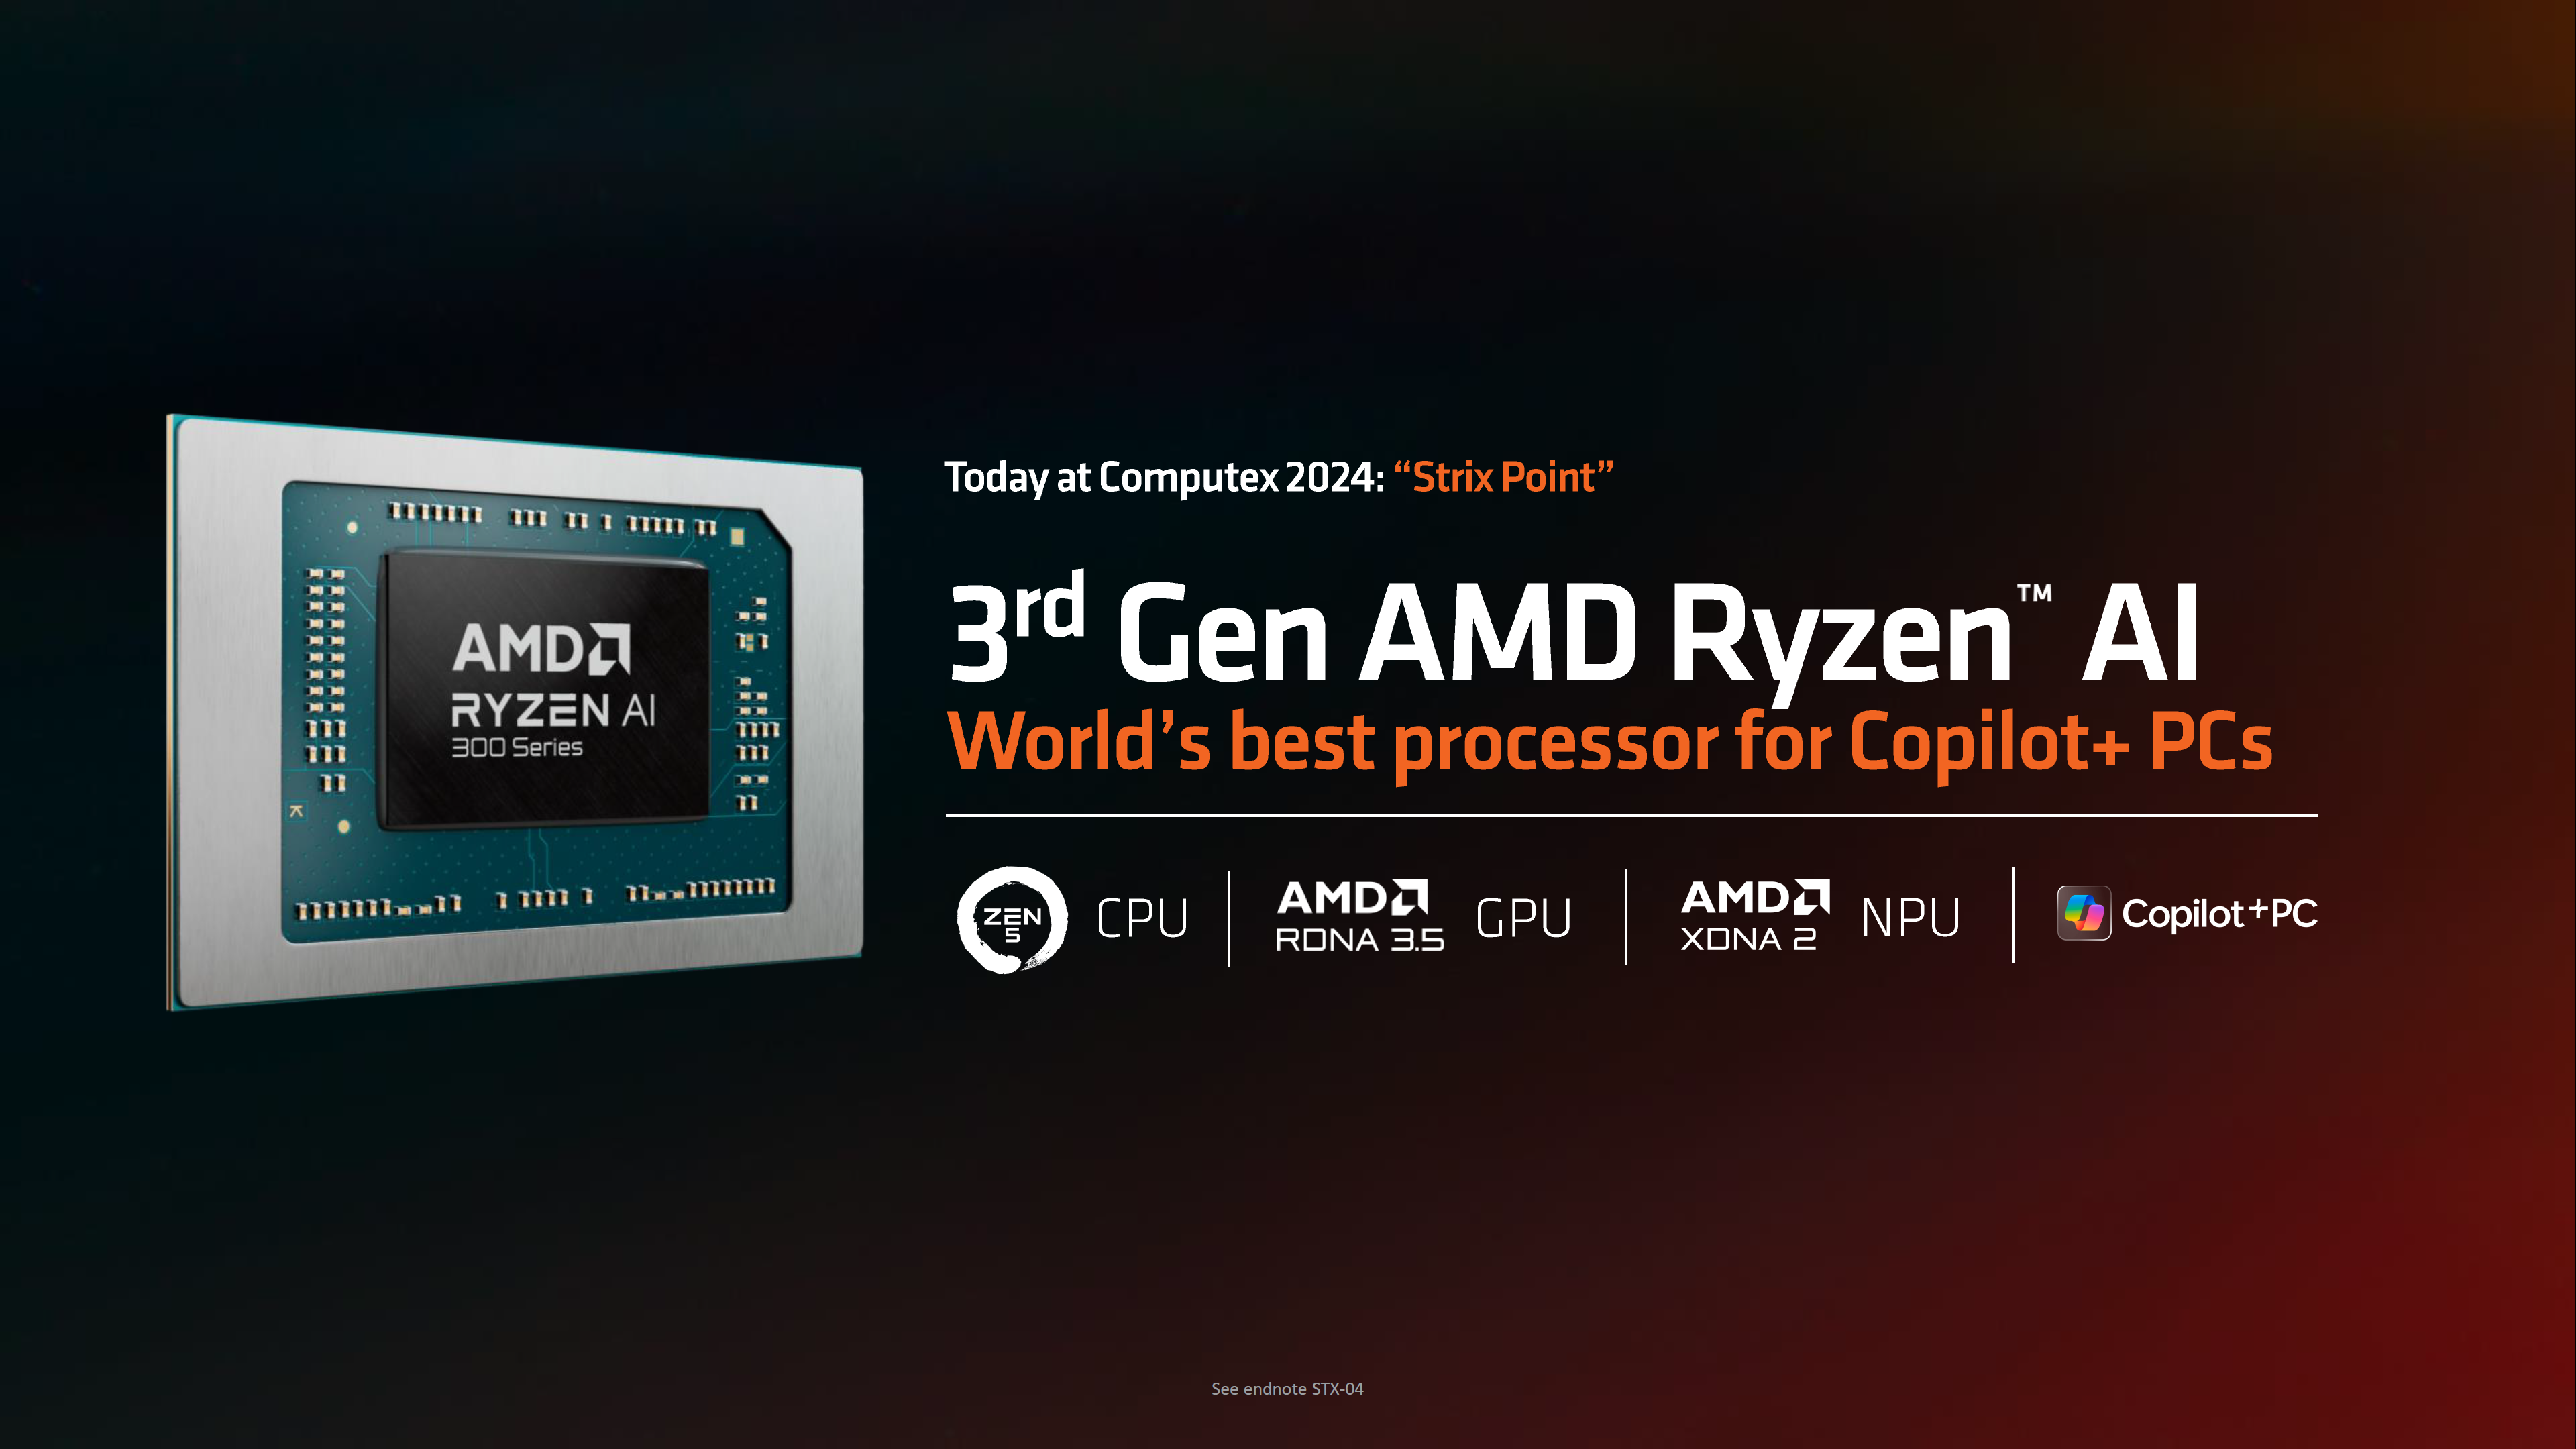 AMD Ryzen AI 300 "Strix" APU-Powered Laptops Launched: Combine Zen 5 CPU, RDNA 3.5 GPU & XDNA 2 NPU Cores, First Die Shot Pictured 2